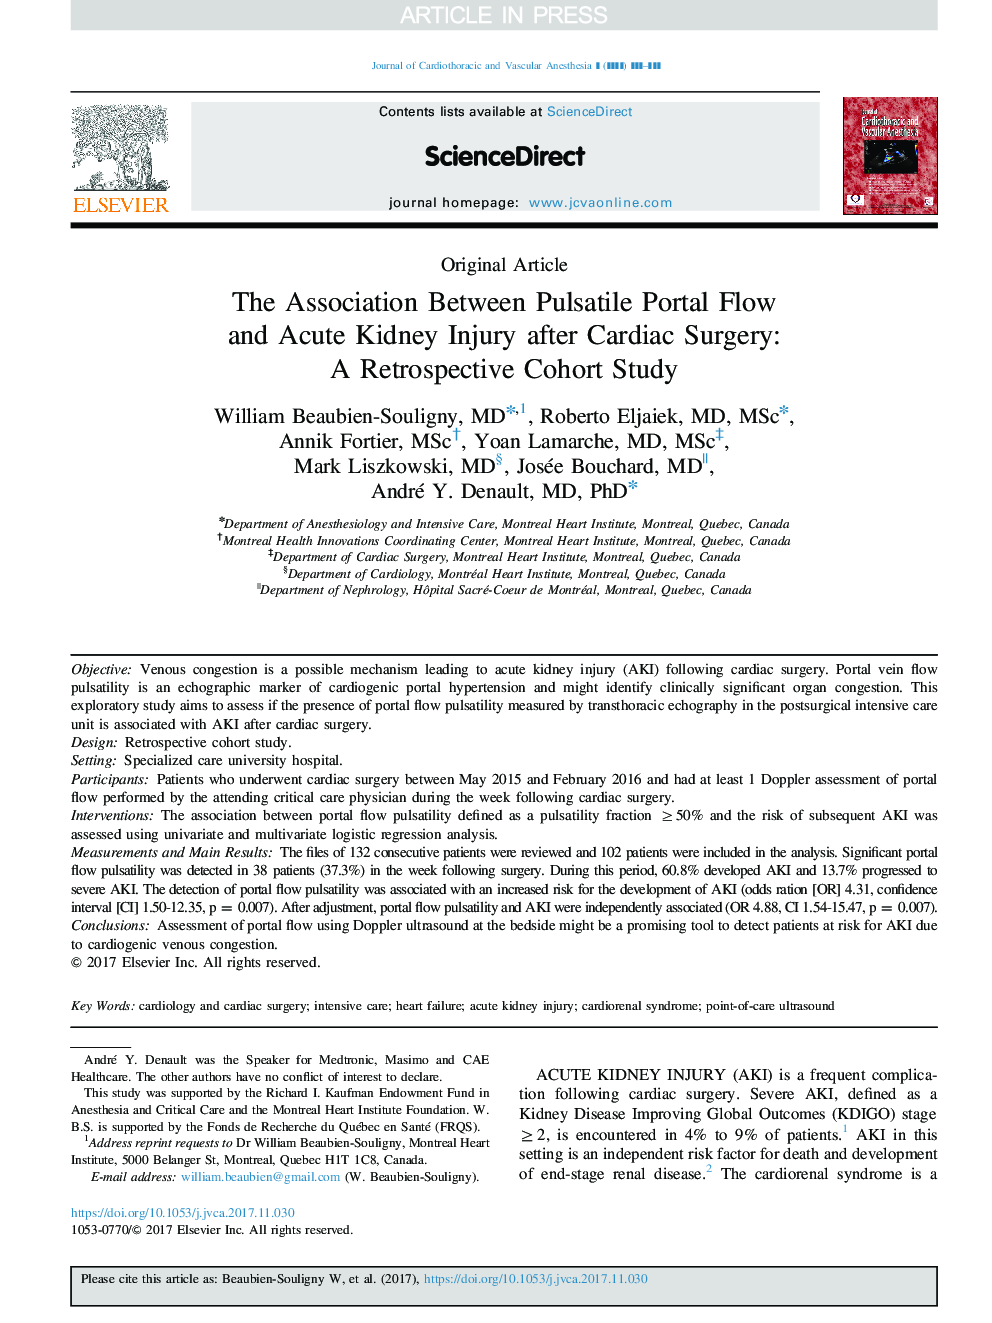 ارتباط بین جریان پورتال پرکالری و آسیب کلیه حاد پس از جراحی قلب: یک مطالعه همگروهی یکپارچه 